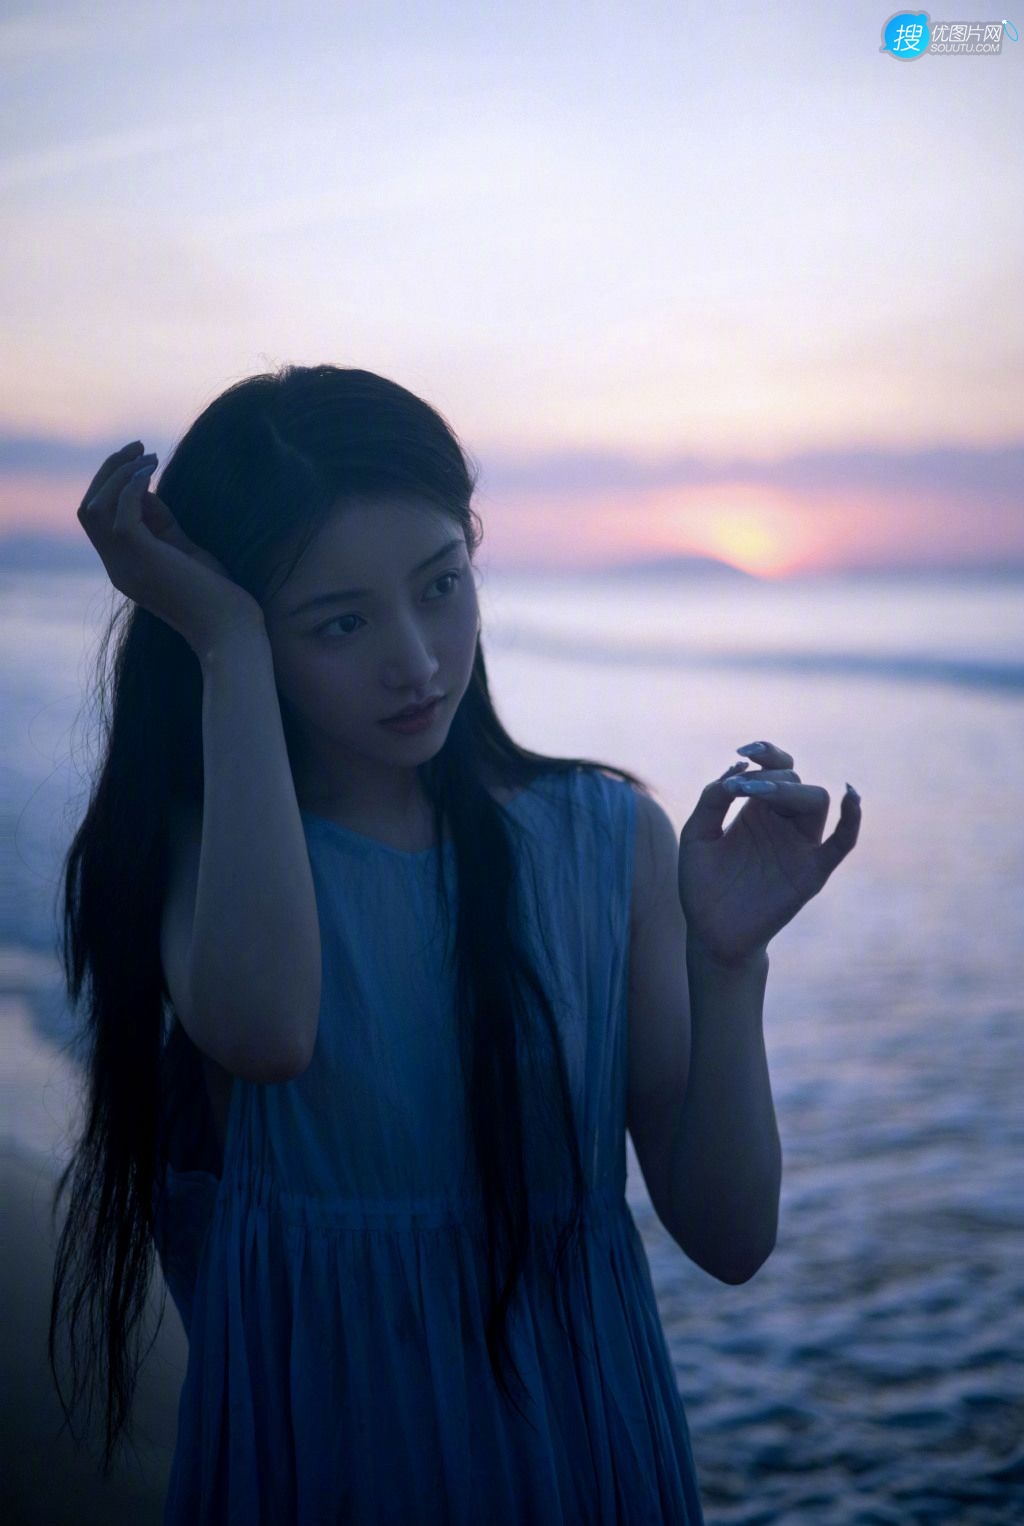 姜贞羽淡蓝色长裙着身海边玩沙戏浪超开心浪漫夏日写真美照图片